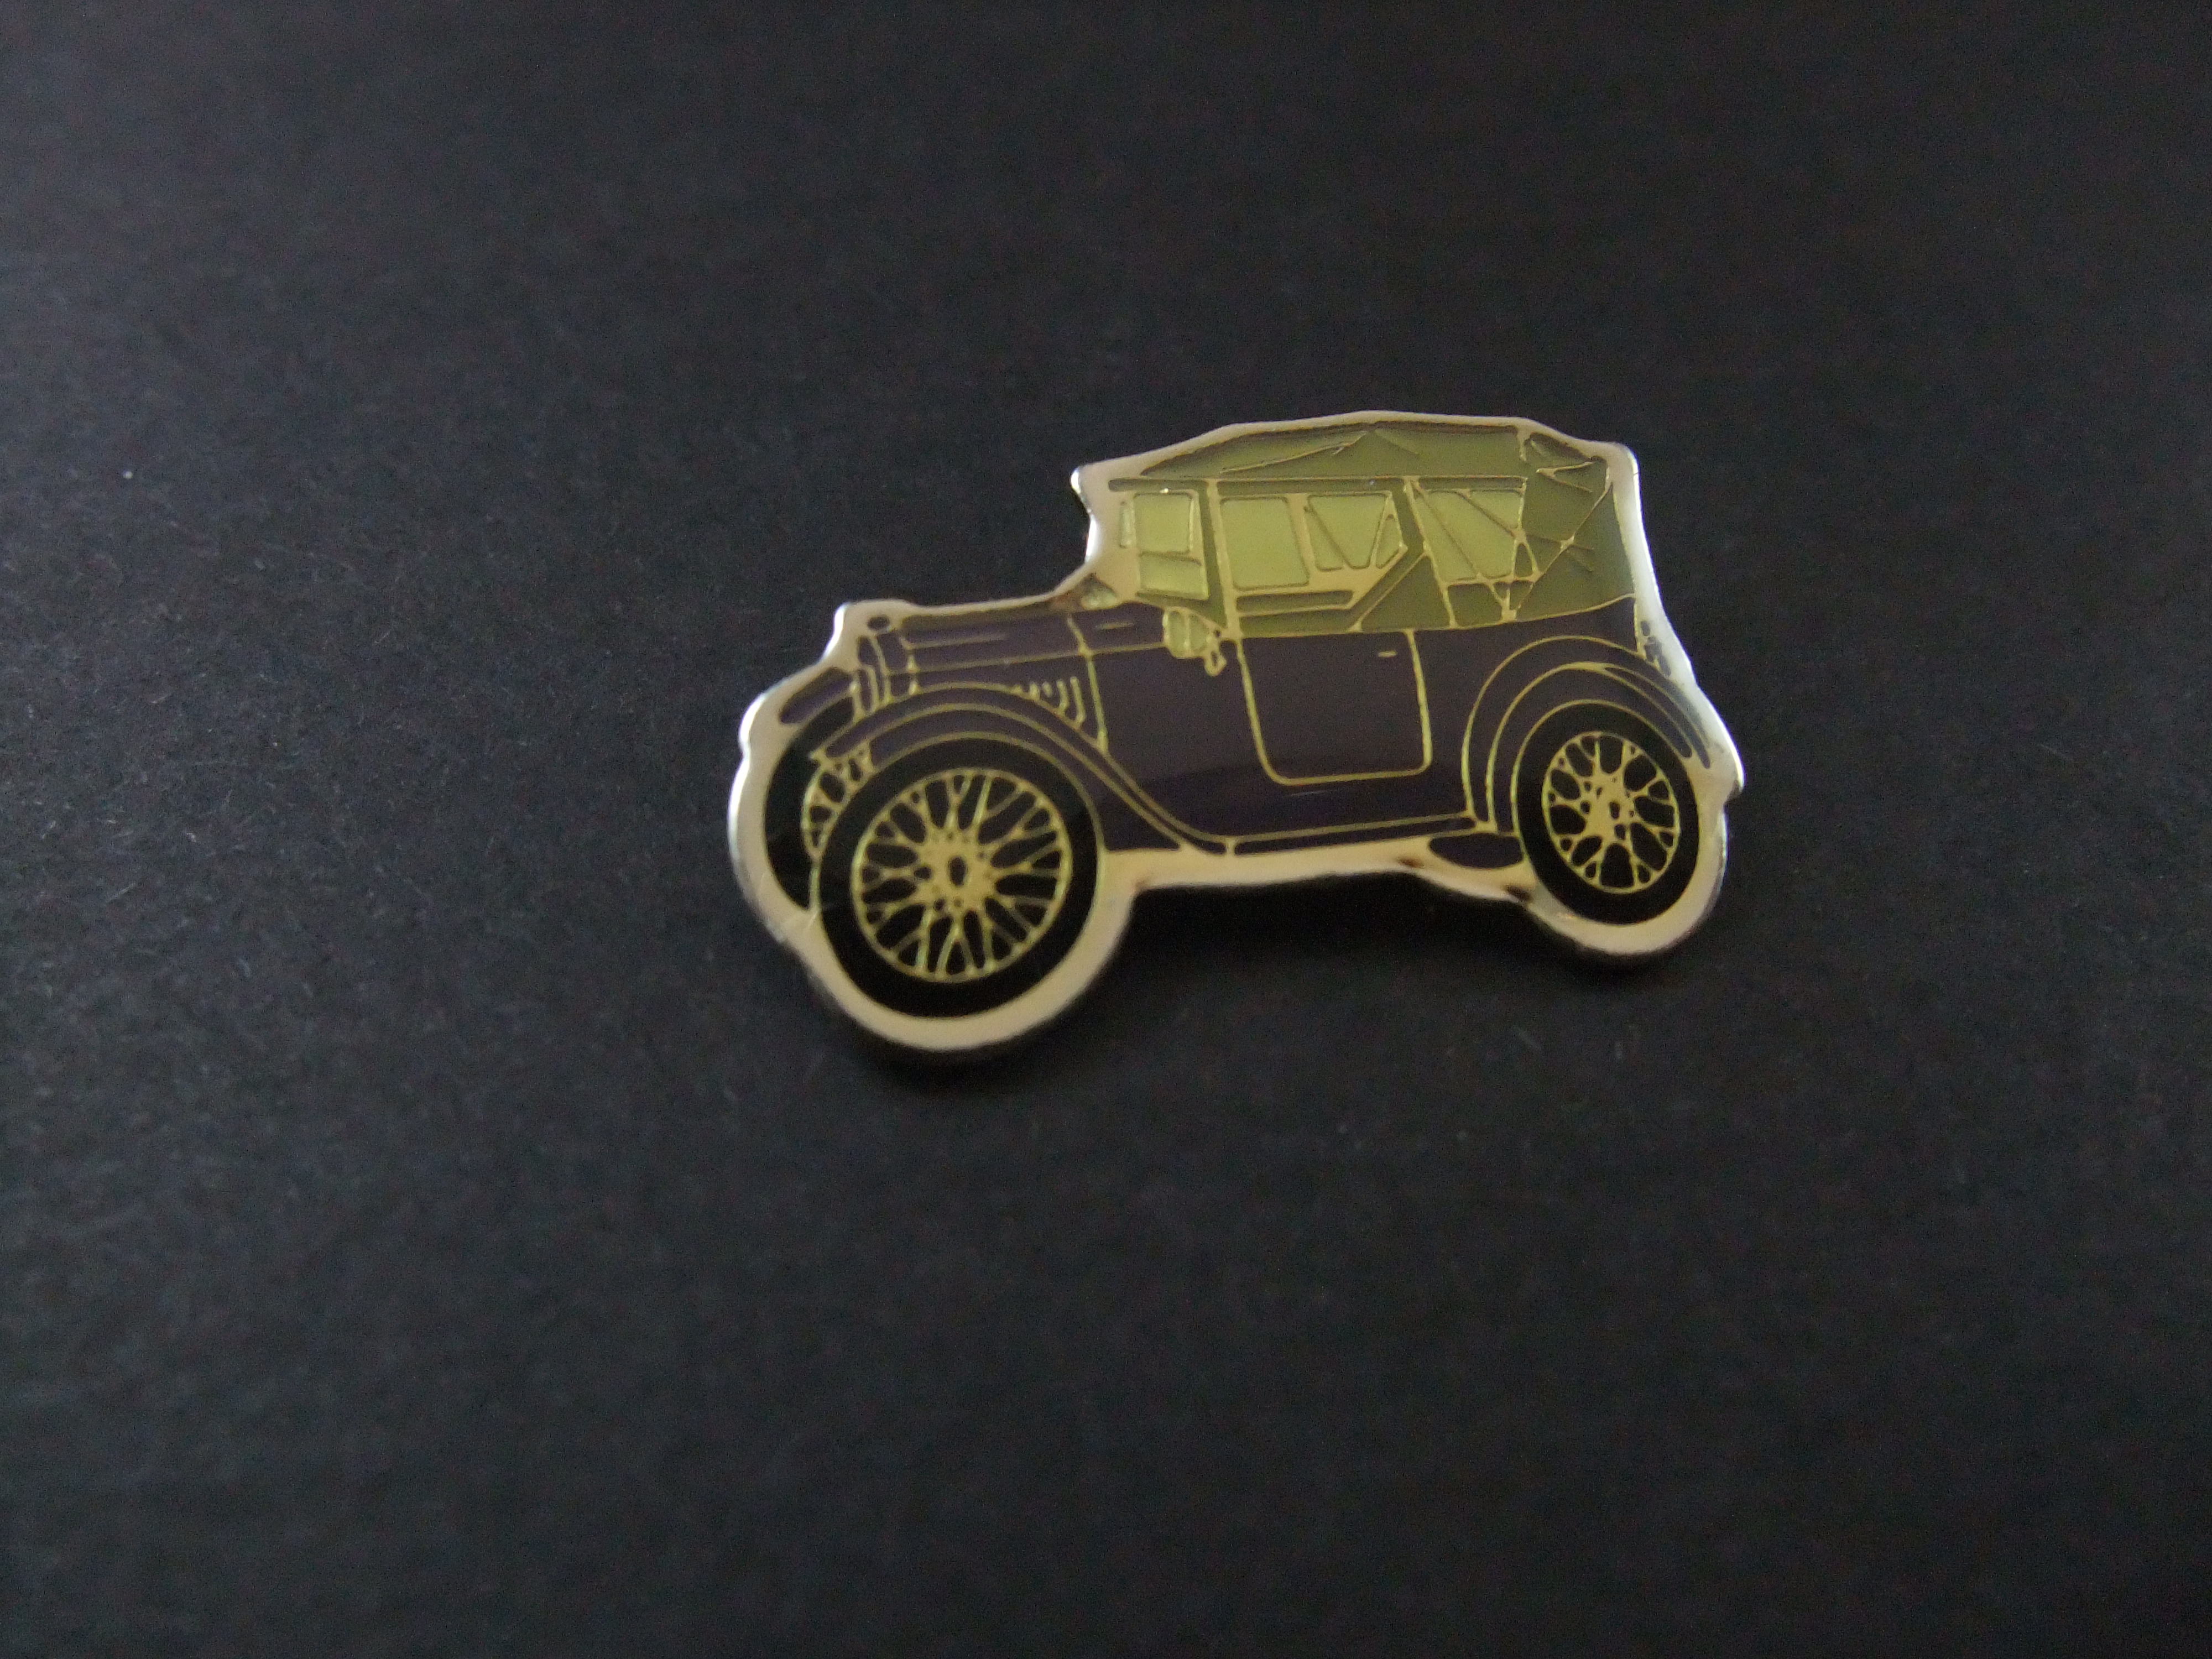 Austin Seven kleine vierpersoonsauto 1924 paars,